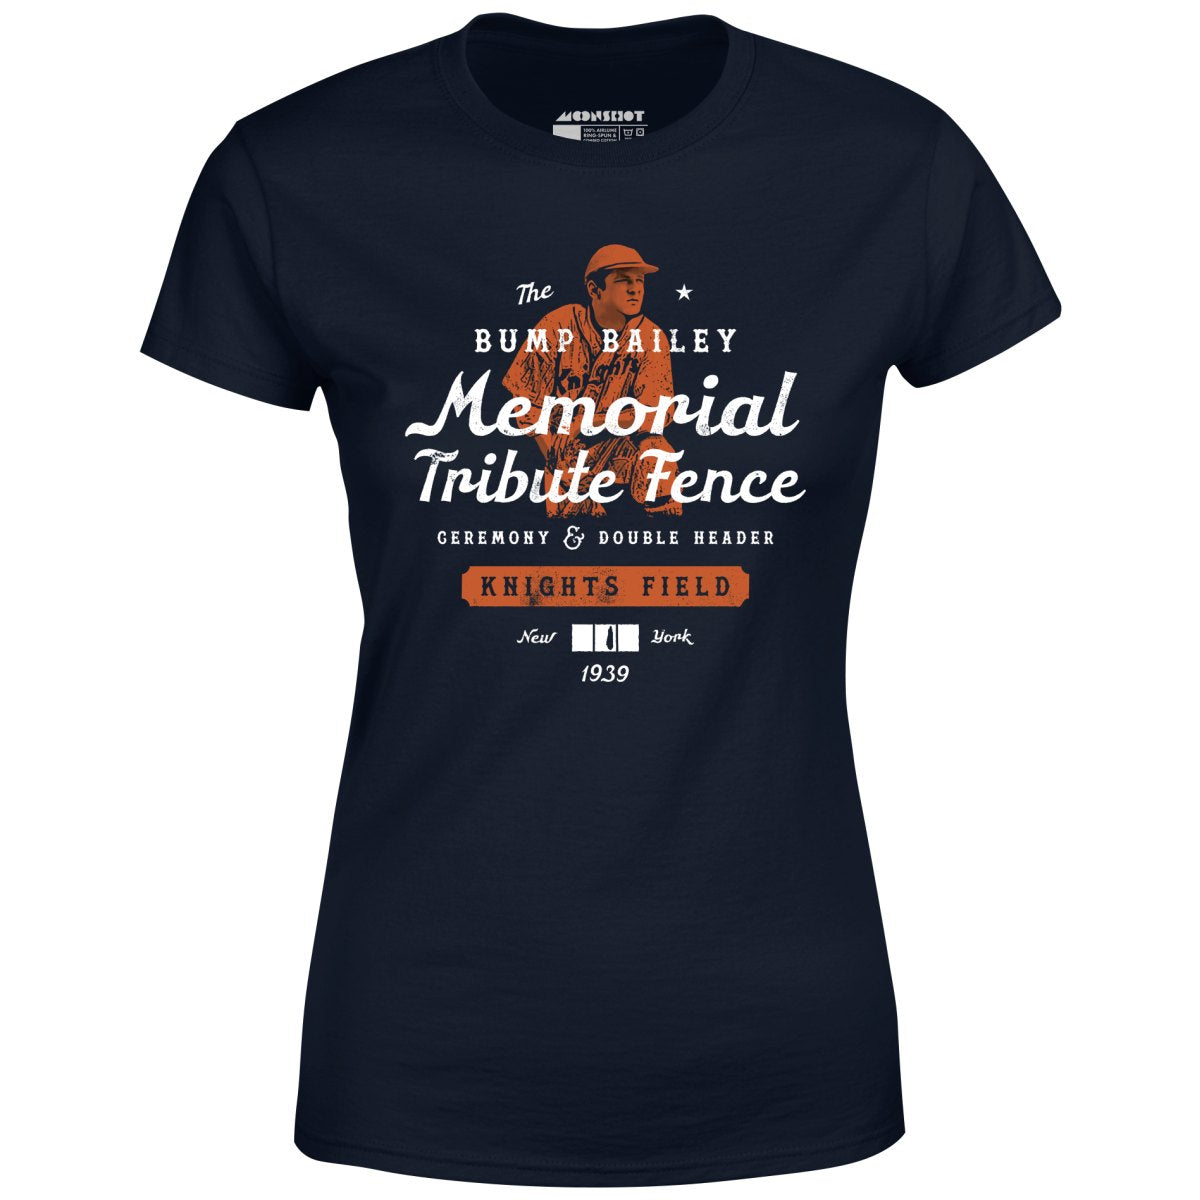 Bump Bailey Memorial Tribute Fence - Women's T-Shirt